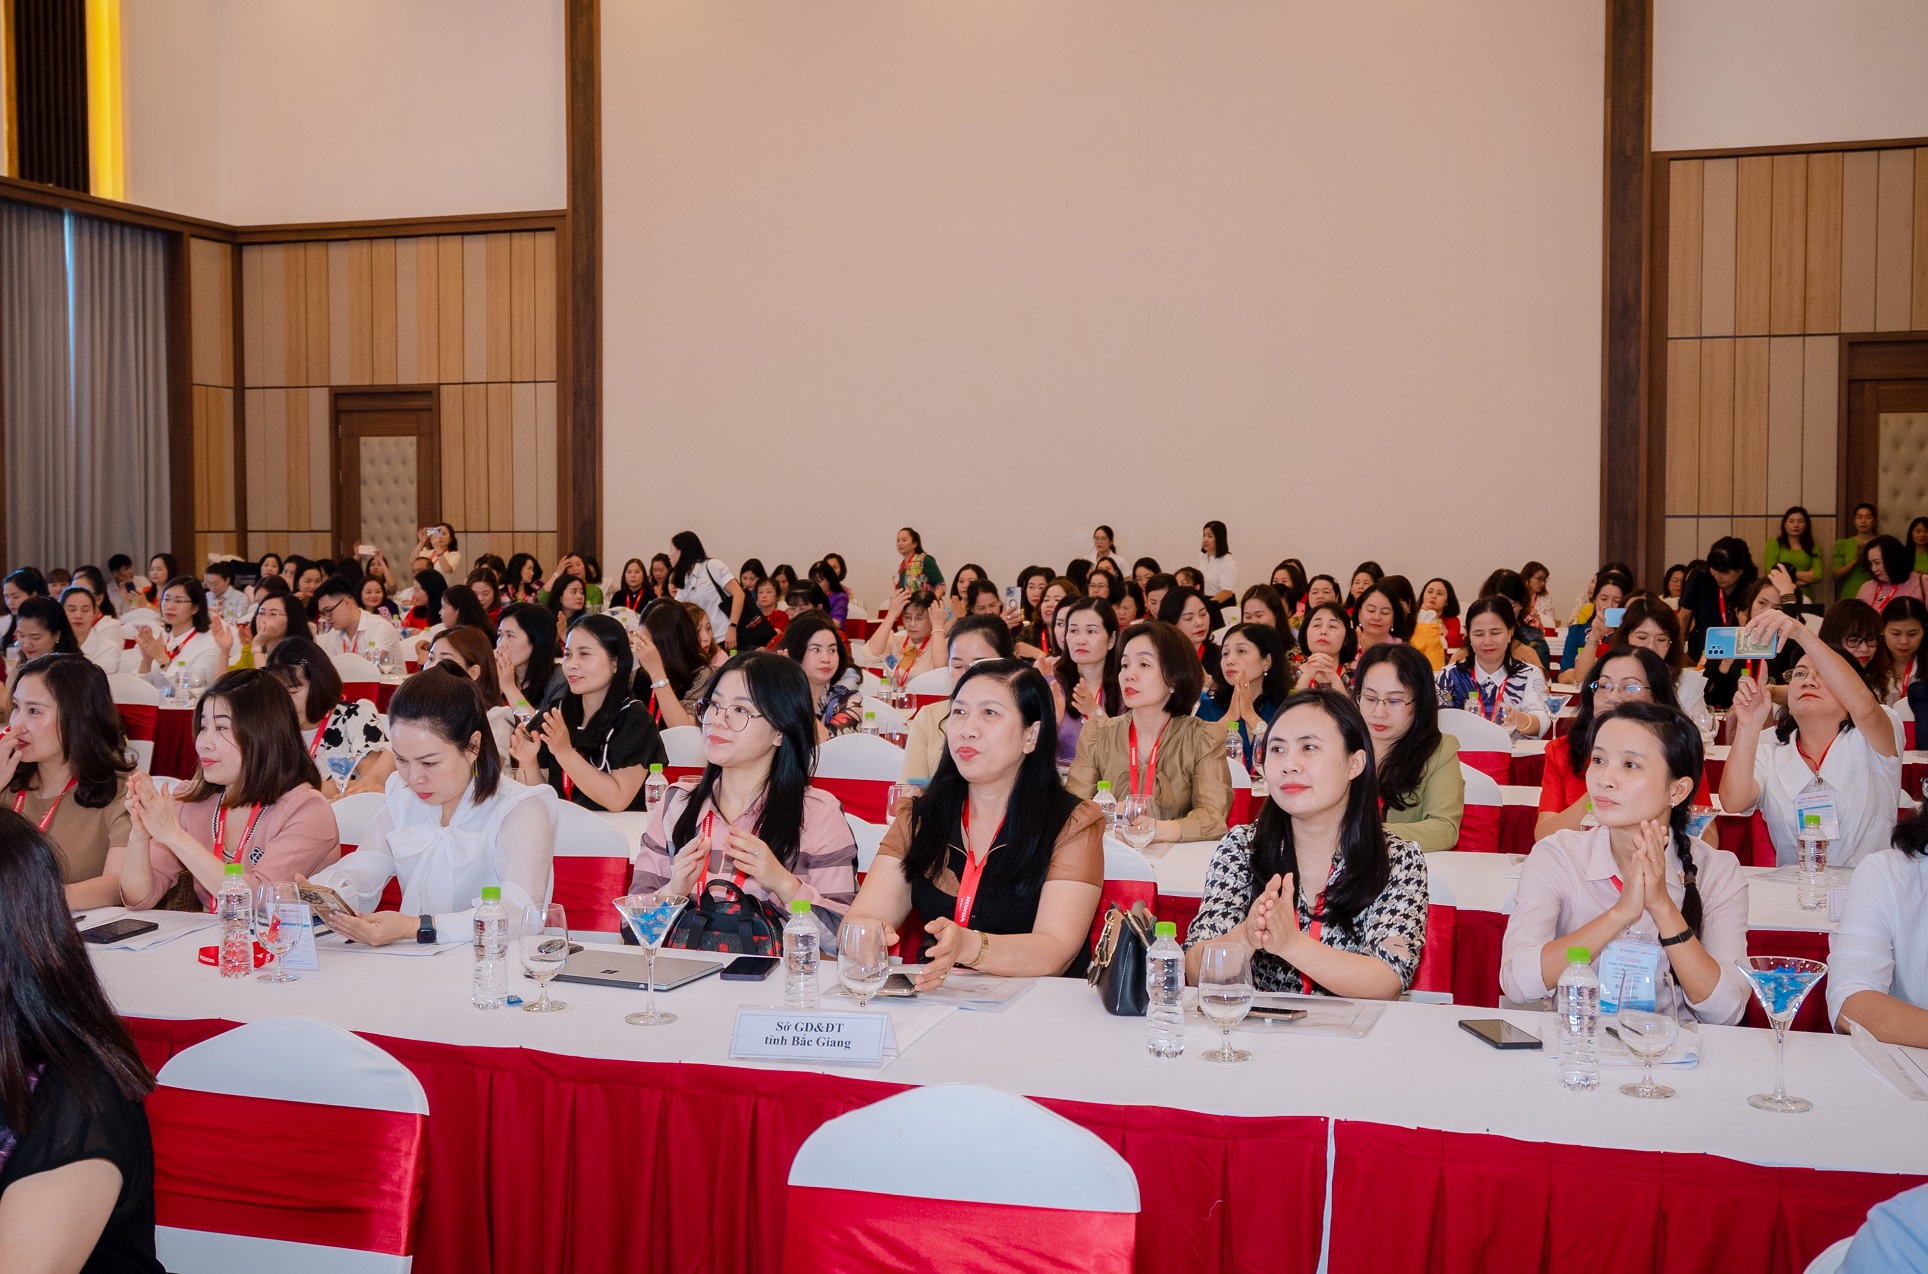 Honda Việt Nam tổ chức Hội nghị tổng kết chương trình “Tôi yêu Việt Nam” trong cấp học mầm non giai đoạn 2020-2024 0-dai-dien-can-bo-quan-ly-va-giao-vien-tai-cac-co-so-giao-duc-mam-non-tai-63-tinh-thanh-pho-tham-du-hoi-nghi.JPG